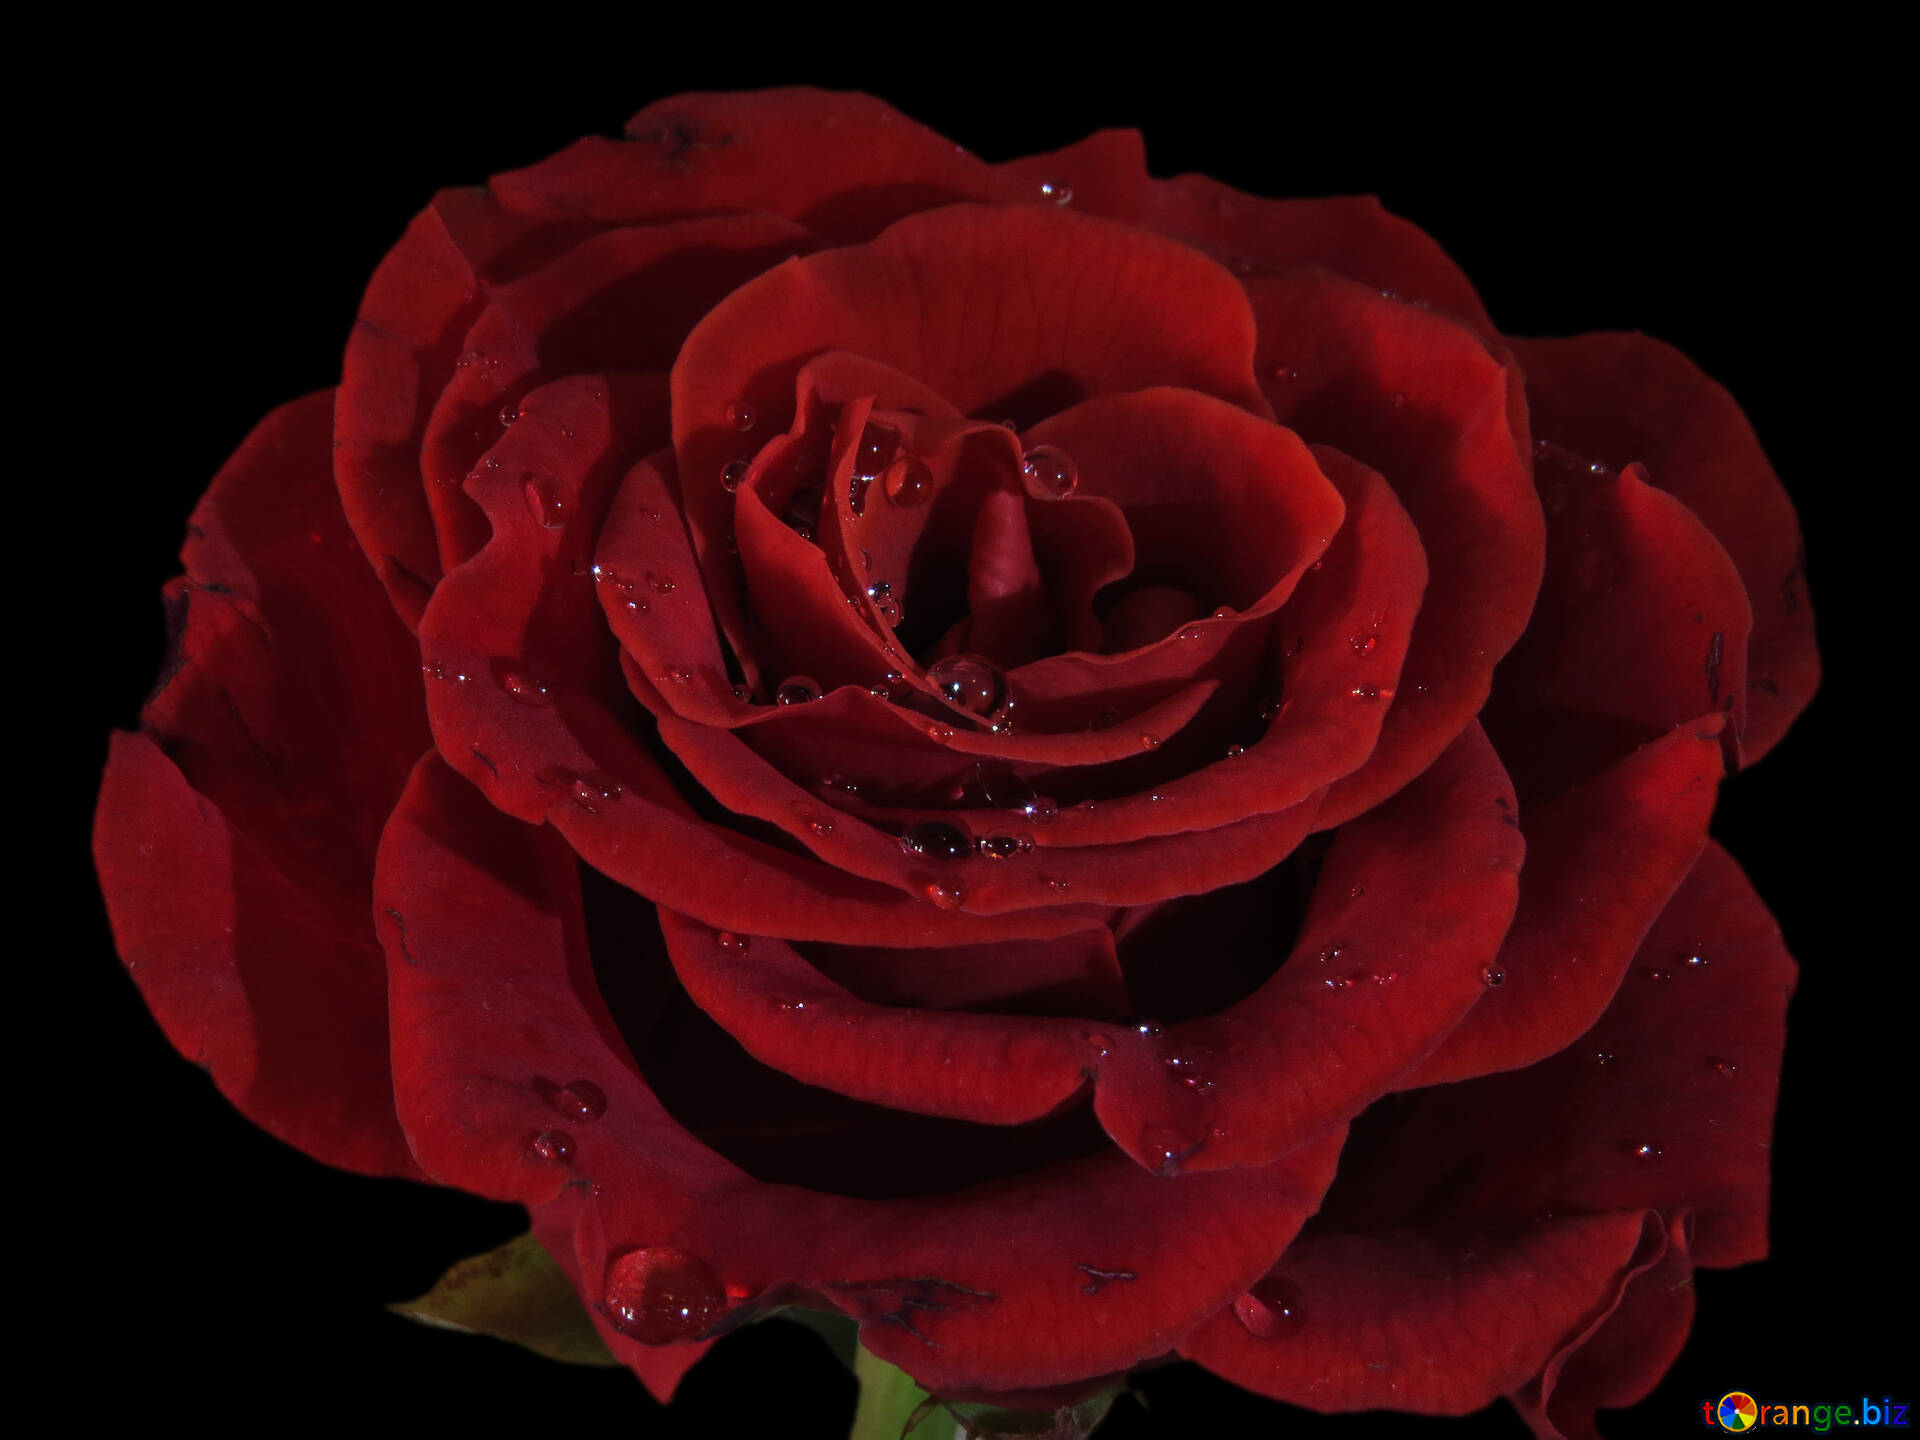 Rose rouge image rose sur fond noir images rose № 17095 | torange.biz